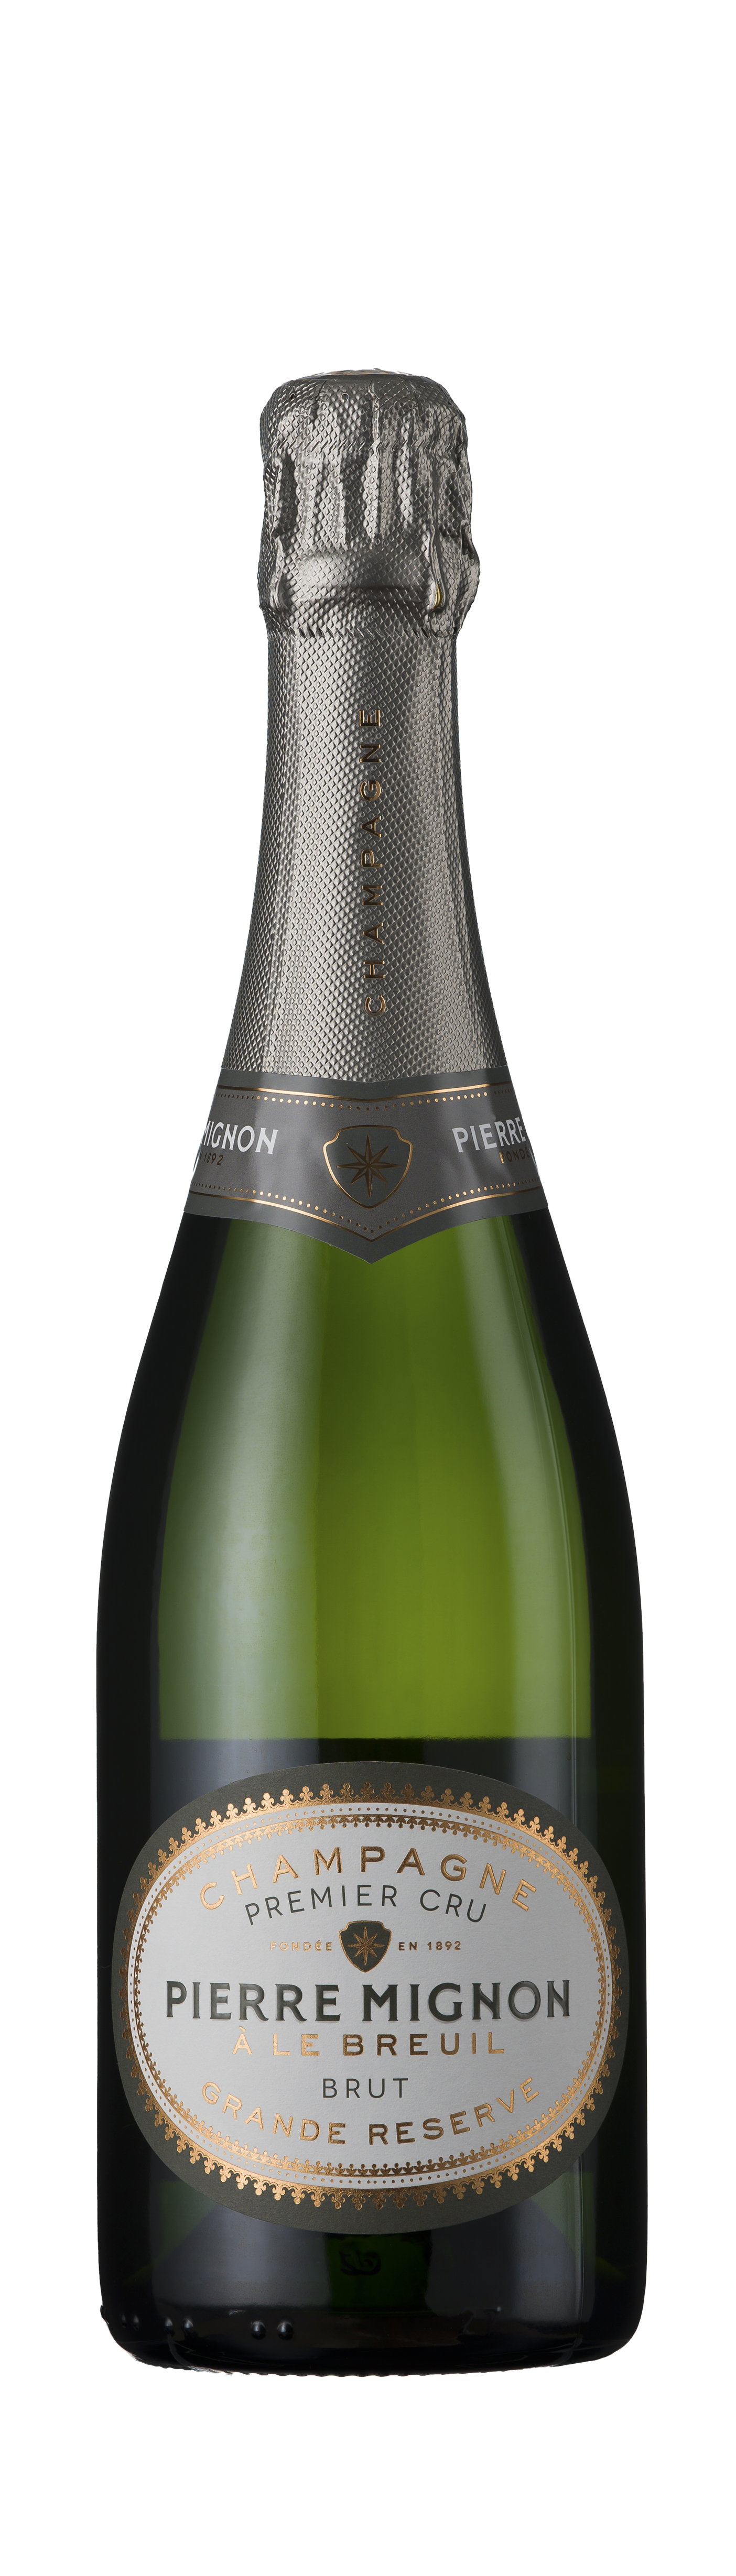 Bottle shot - Pierre Mignon, Grande Réserve Premier Cru, Champagne, France